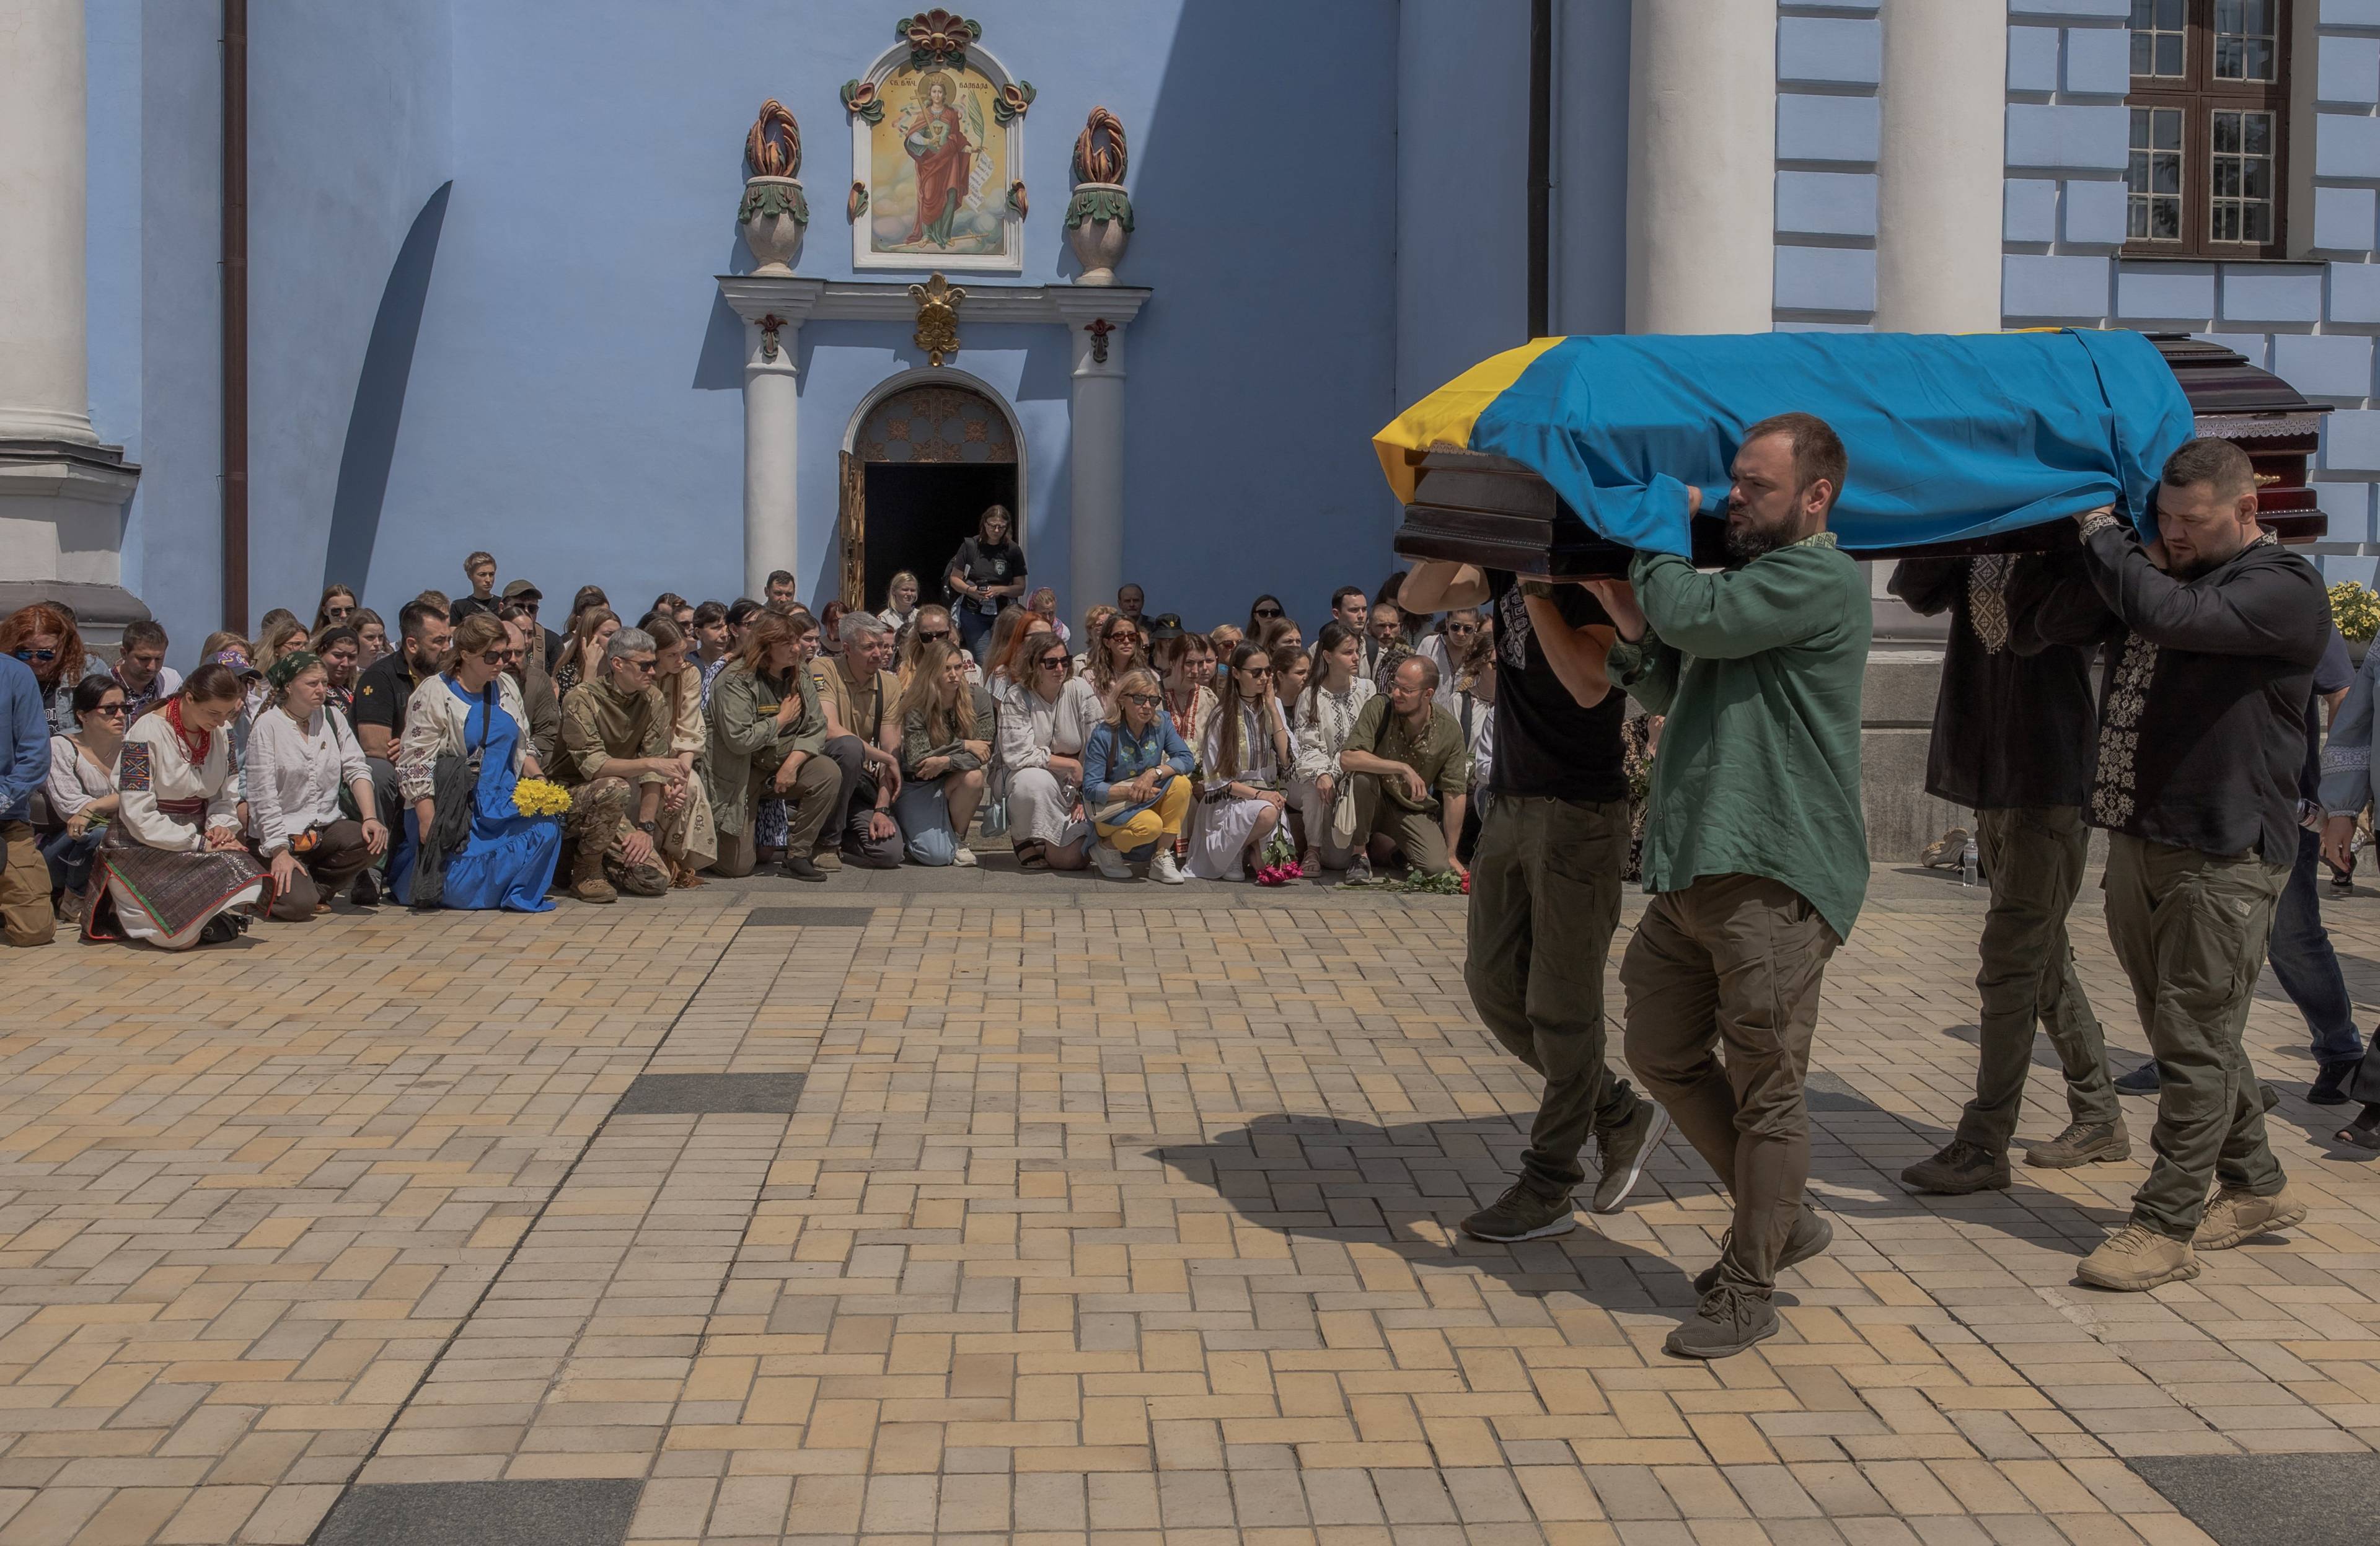 mężczyźni niosą trumnę spowitą w niebiesko-zółtą flagę, w tle cerkiew i klęczący żałobnicy